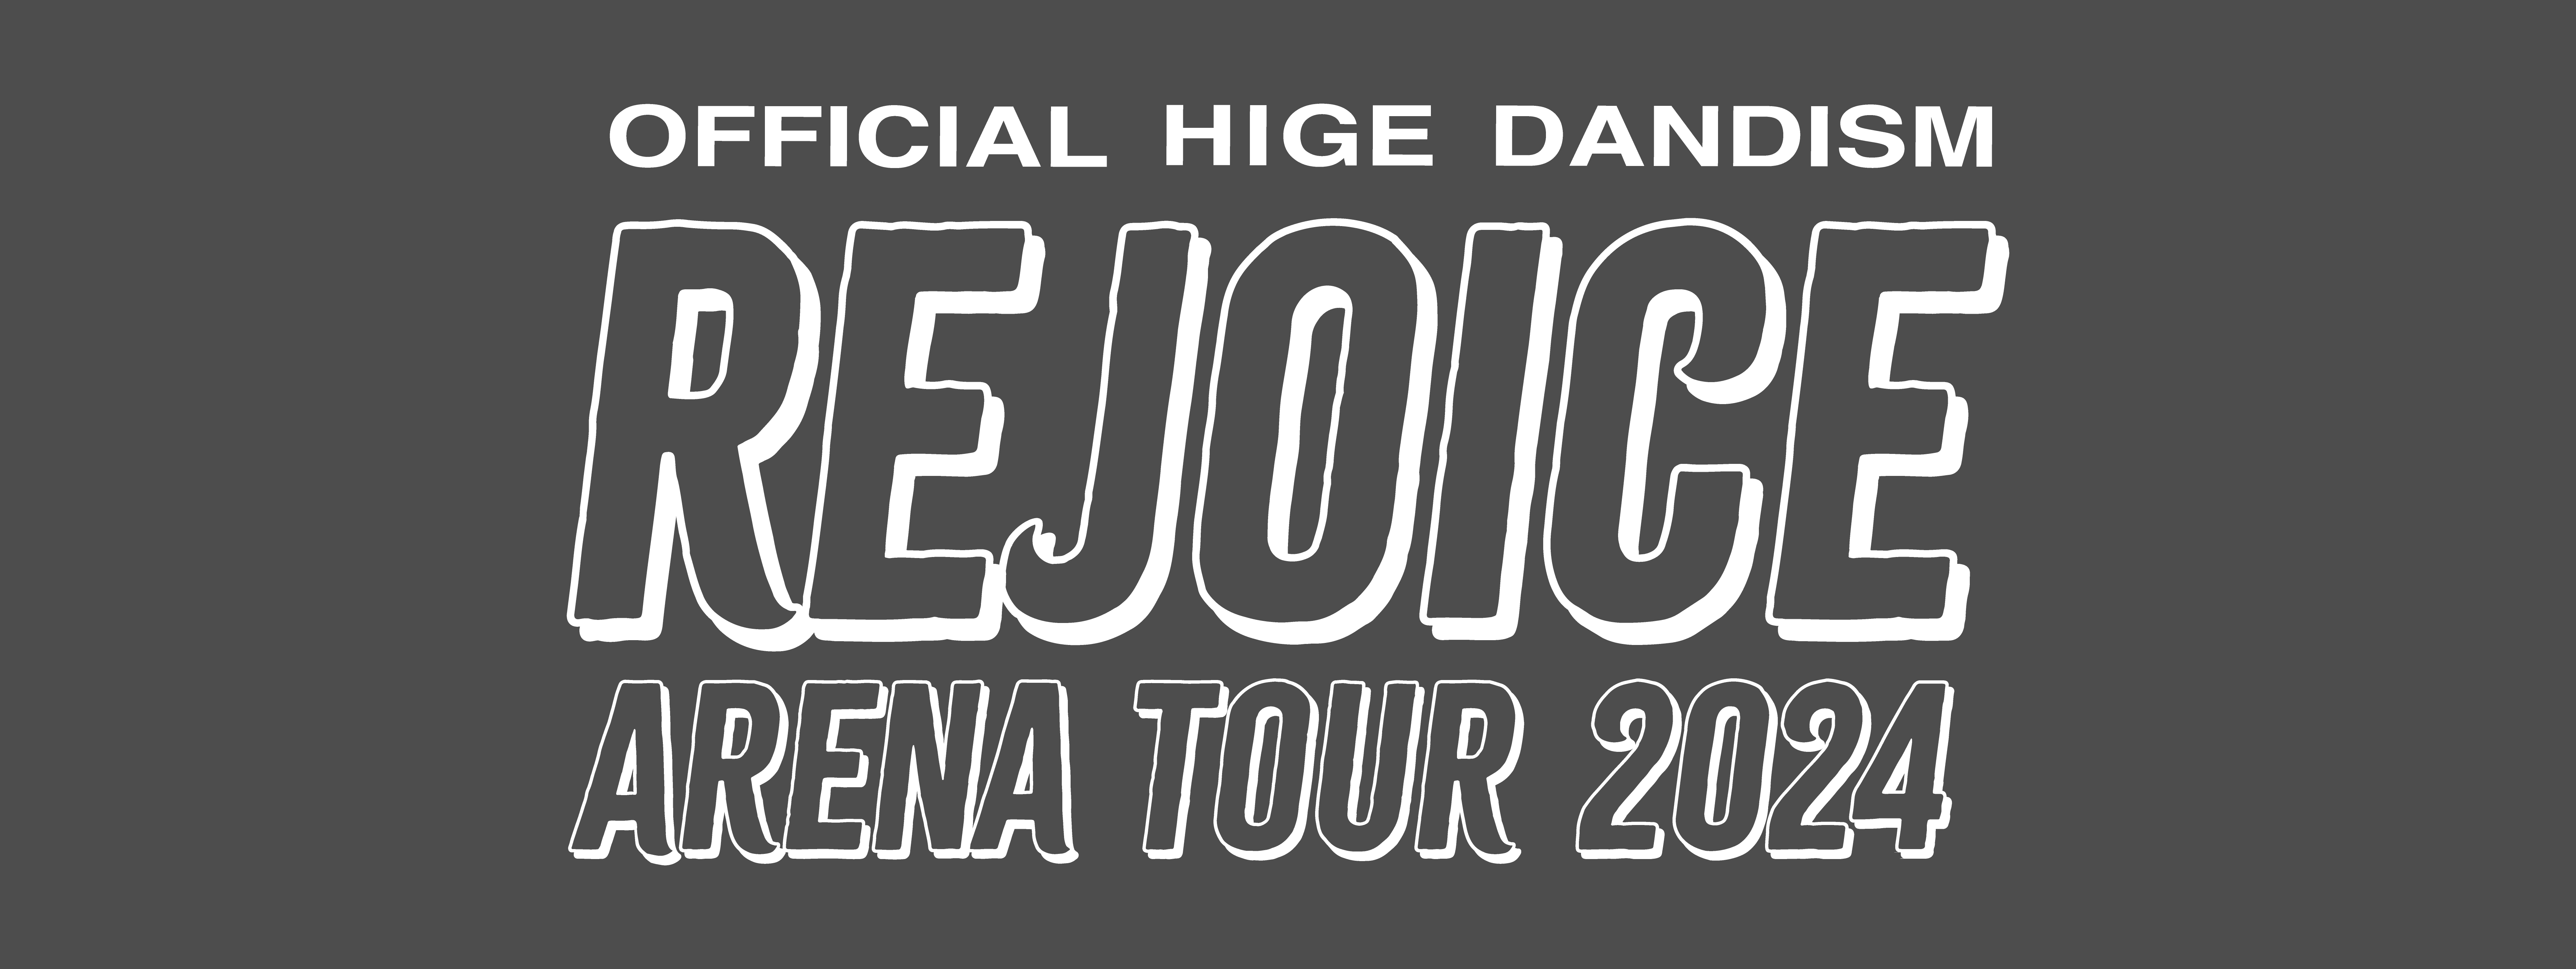 Arena Tour 2024 Rejoice